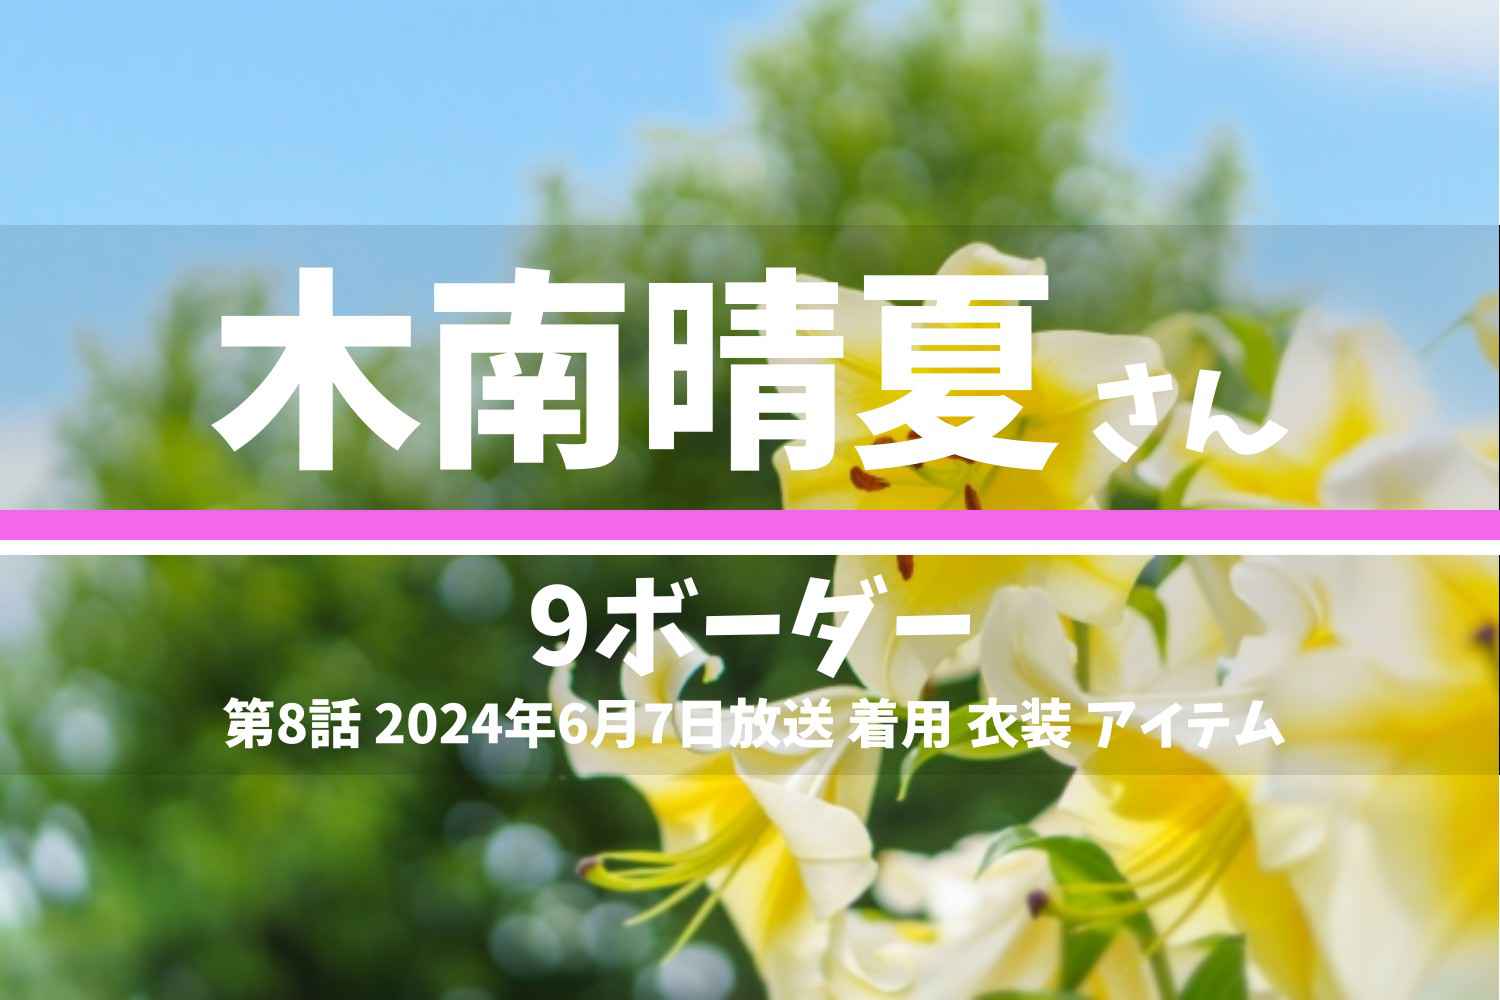 9ボーダー 木南晴夏さん テレビドラマ 衣装 2024年6月7日放送